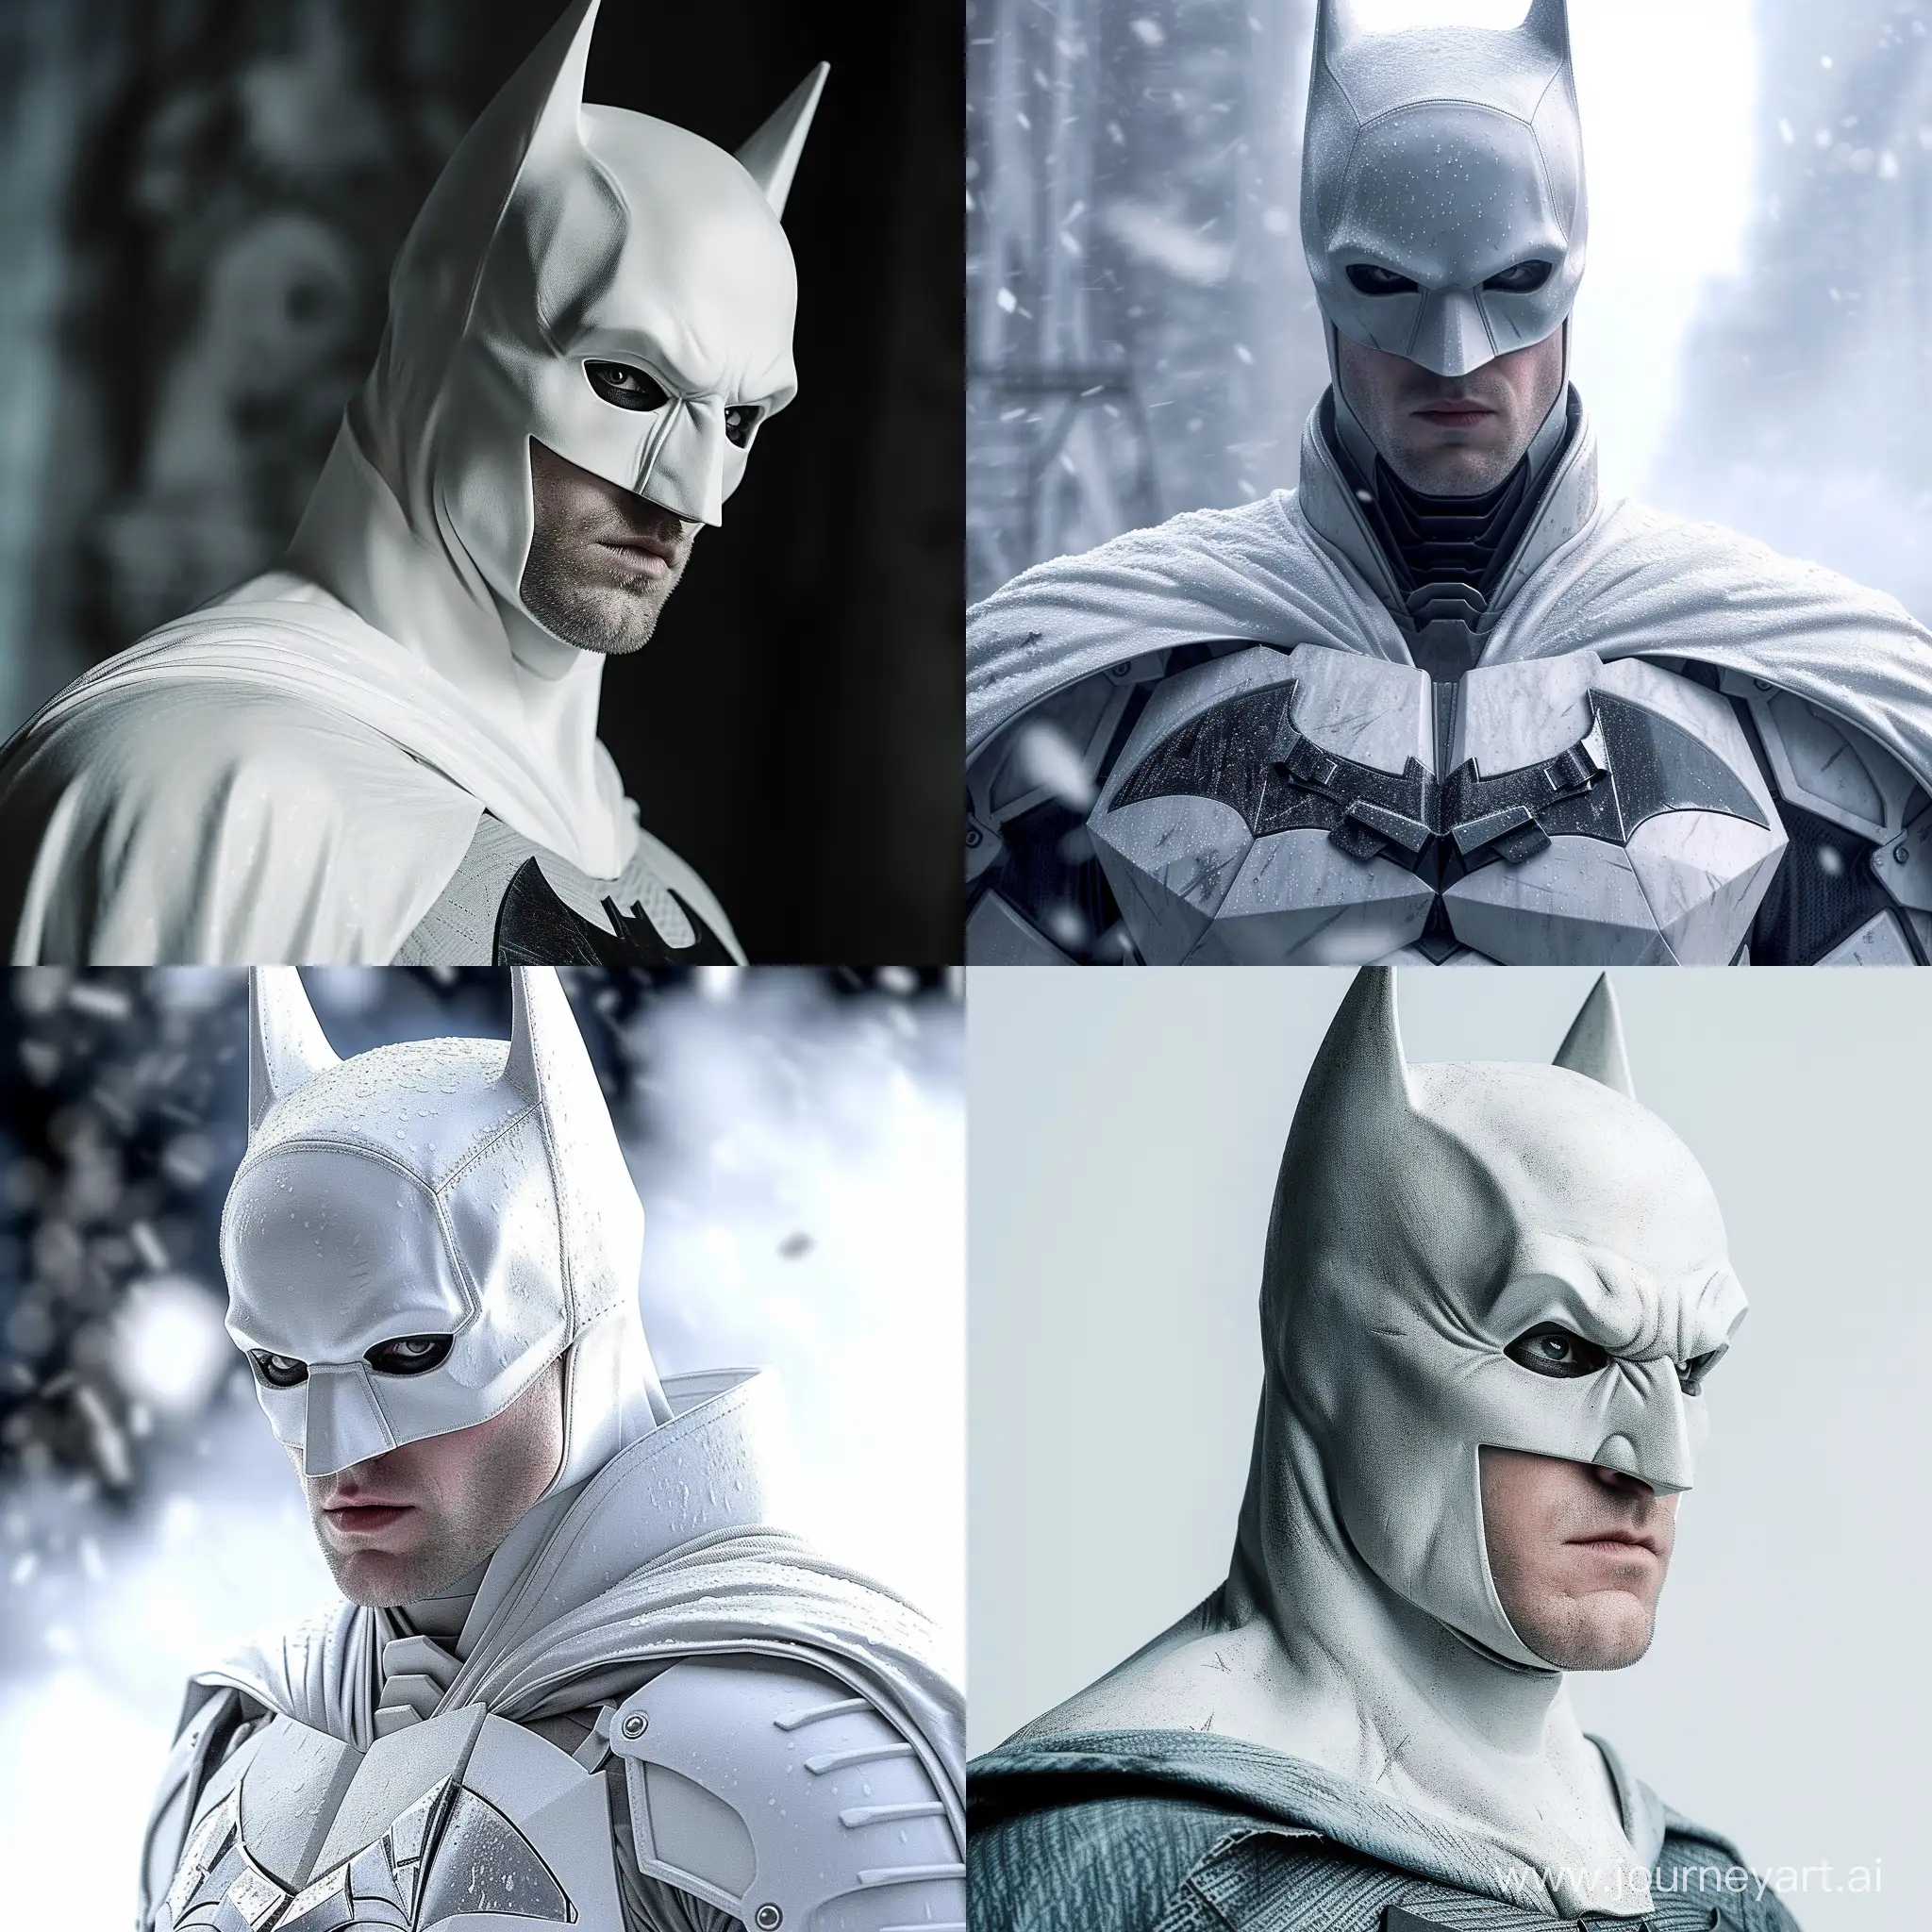 Robert Pattinson as Batman in white 